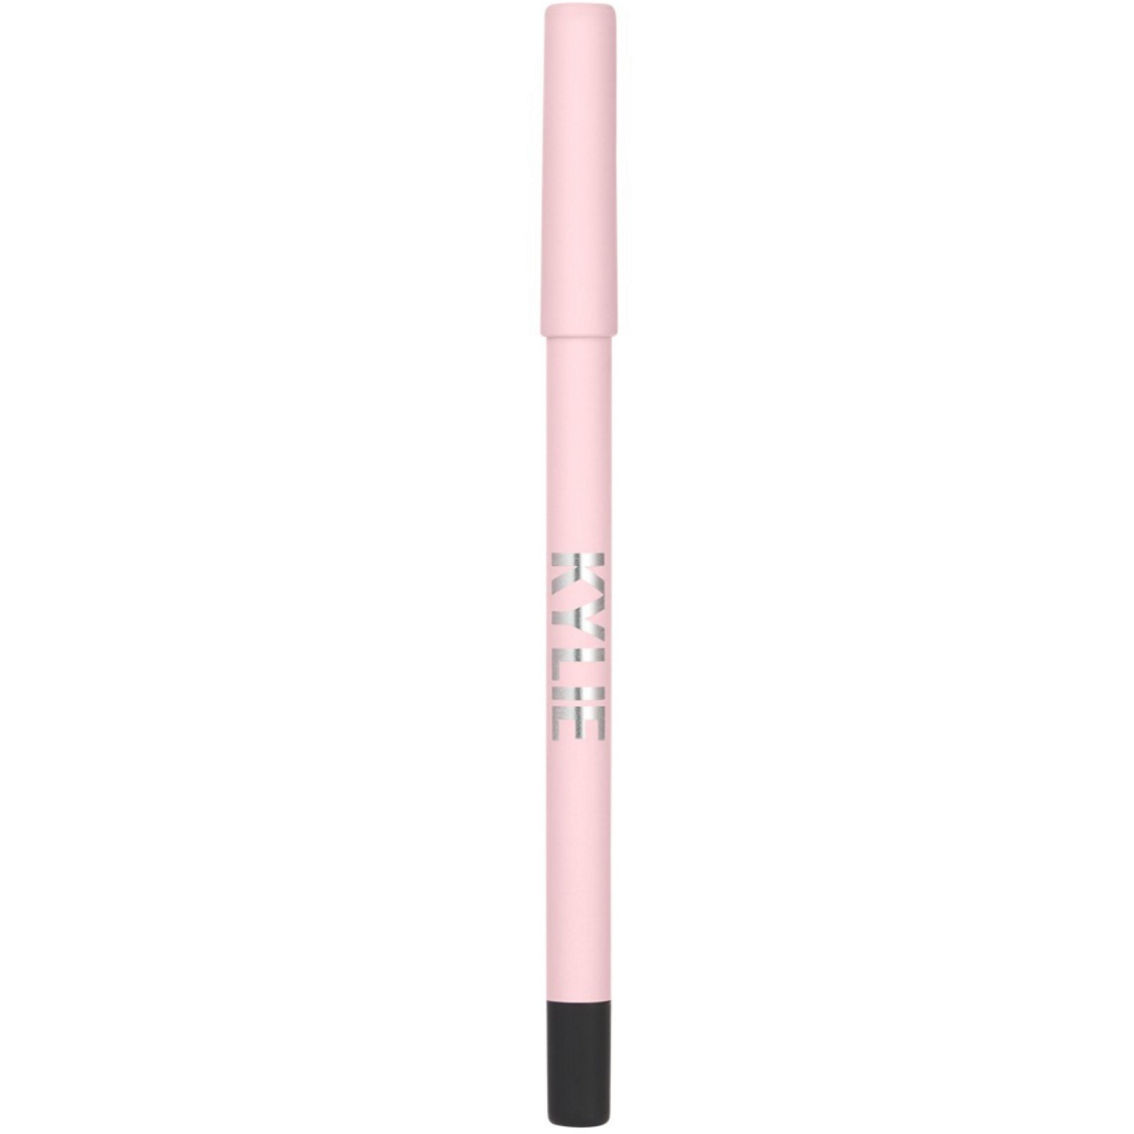 Kylie Cosmetics Gel Eyeliner Pencil - Image 2 of 3